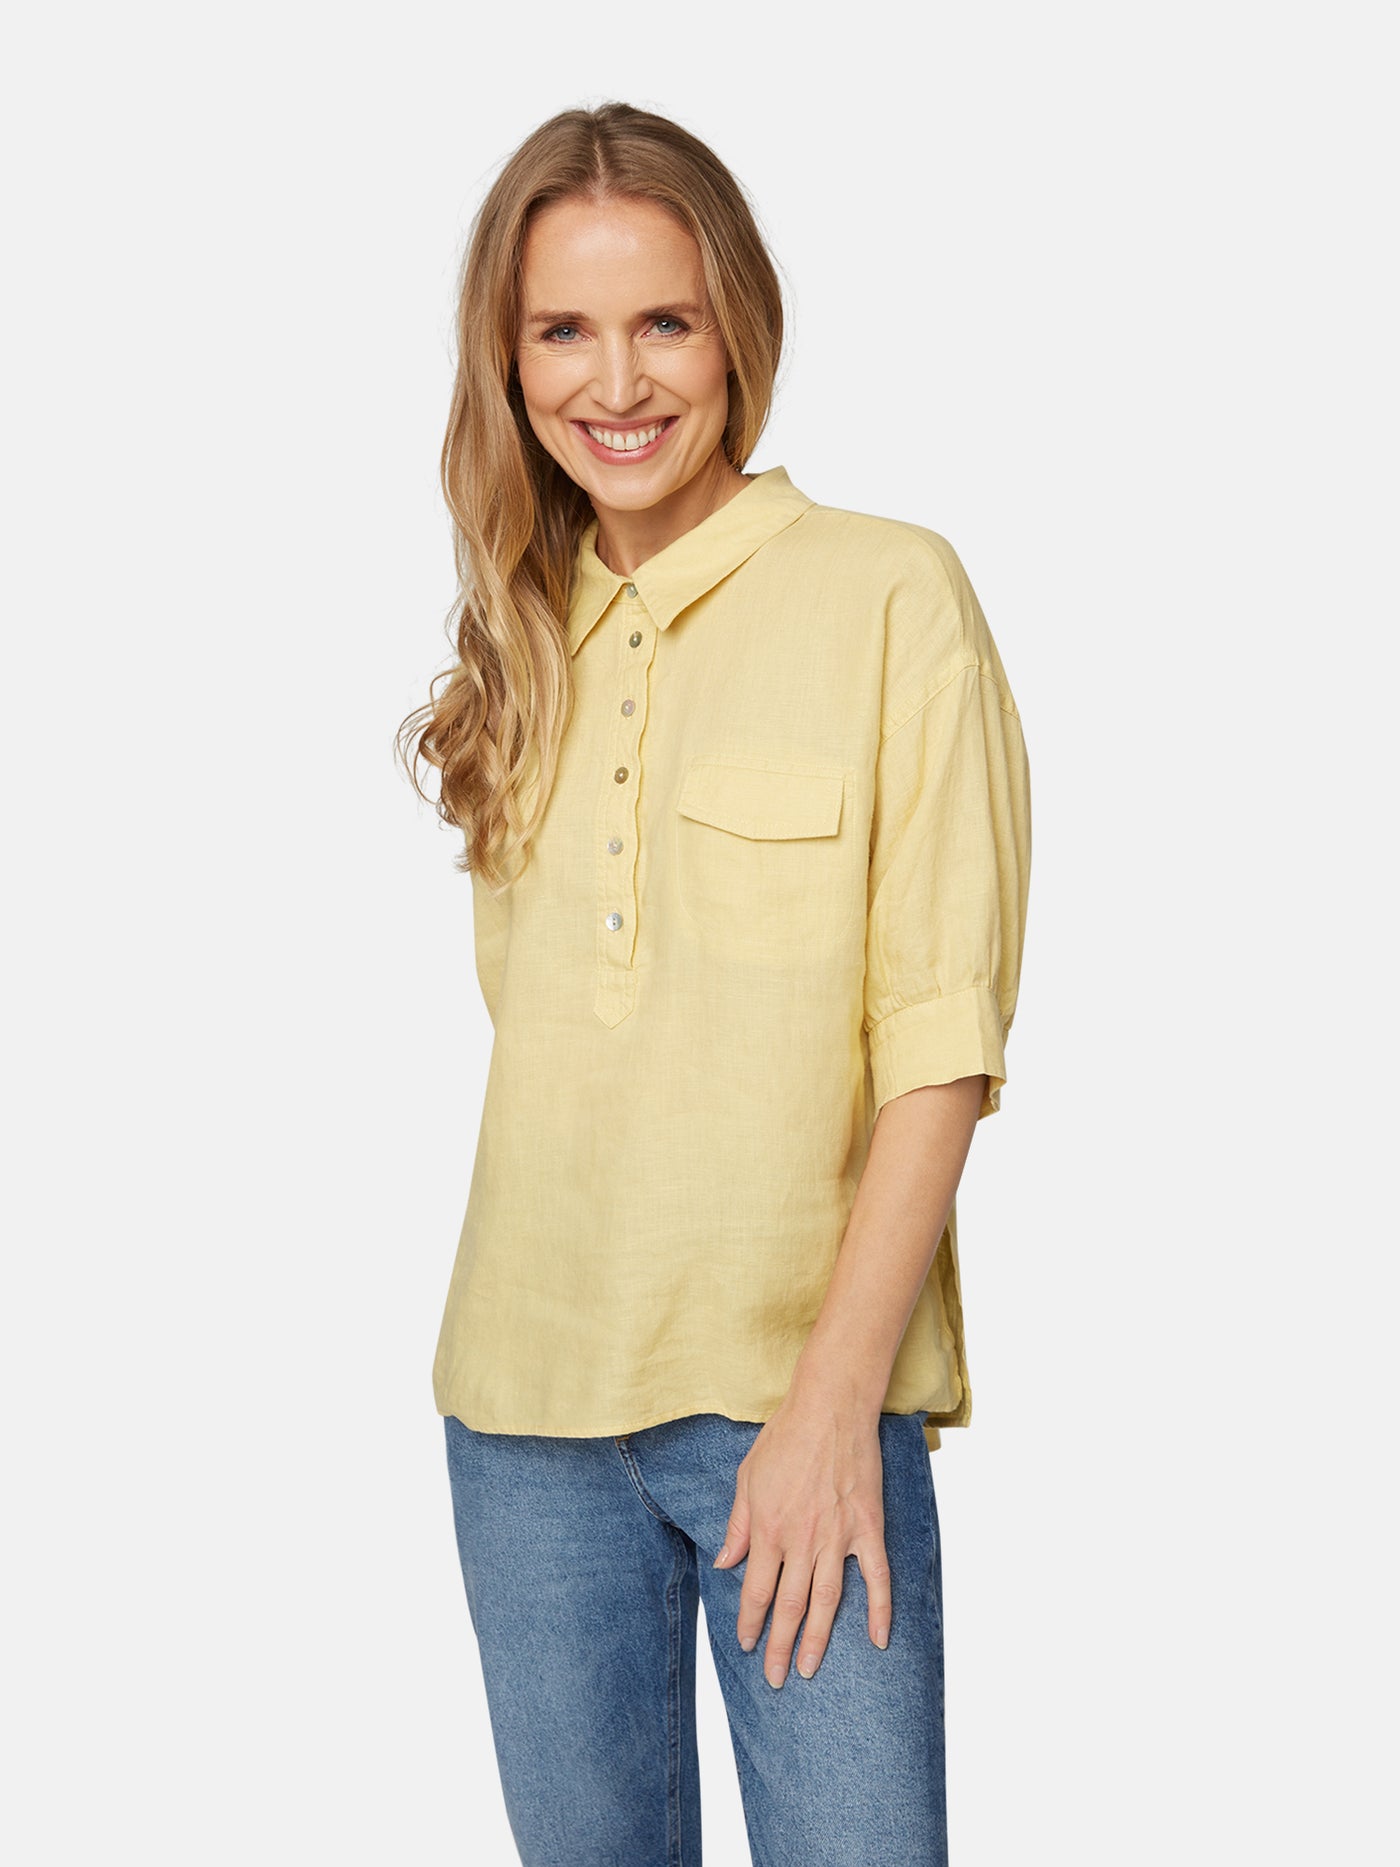 Skjorte - Straw Yellow